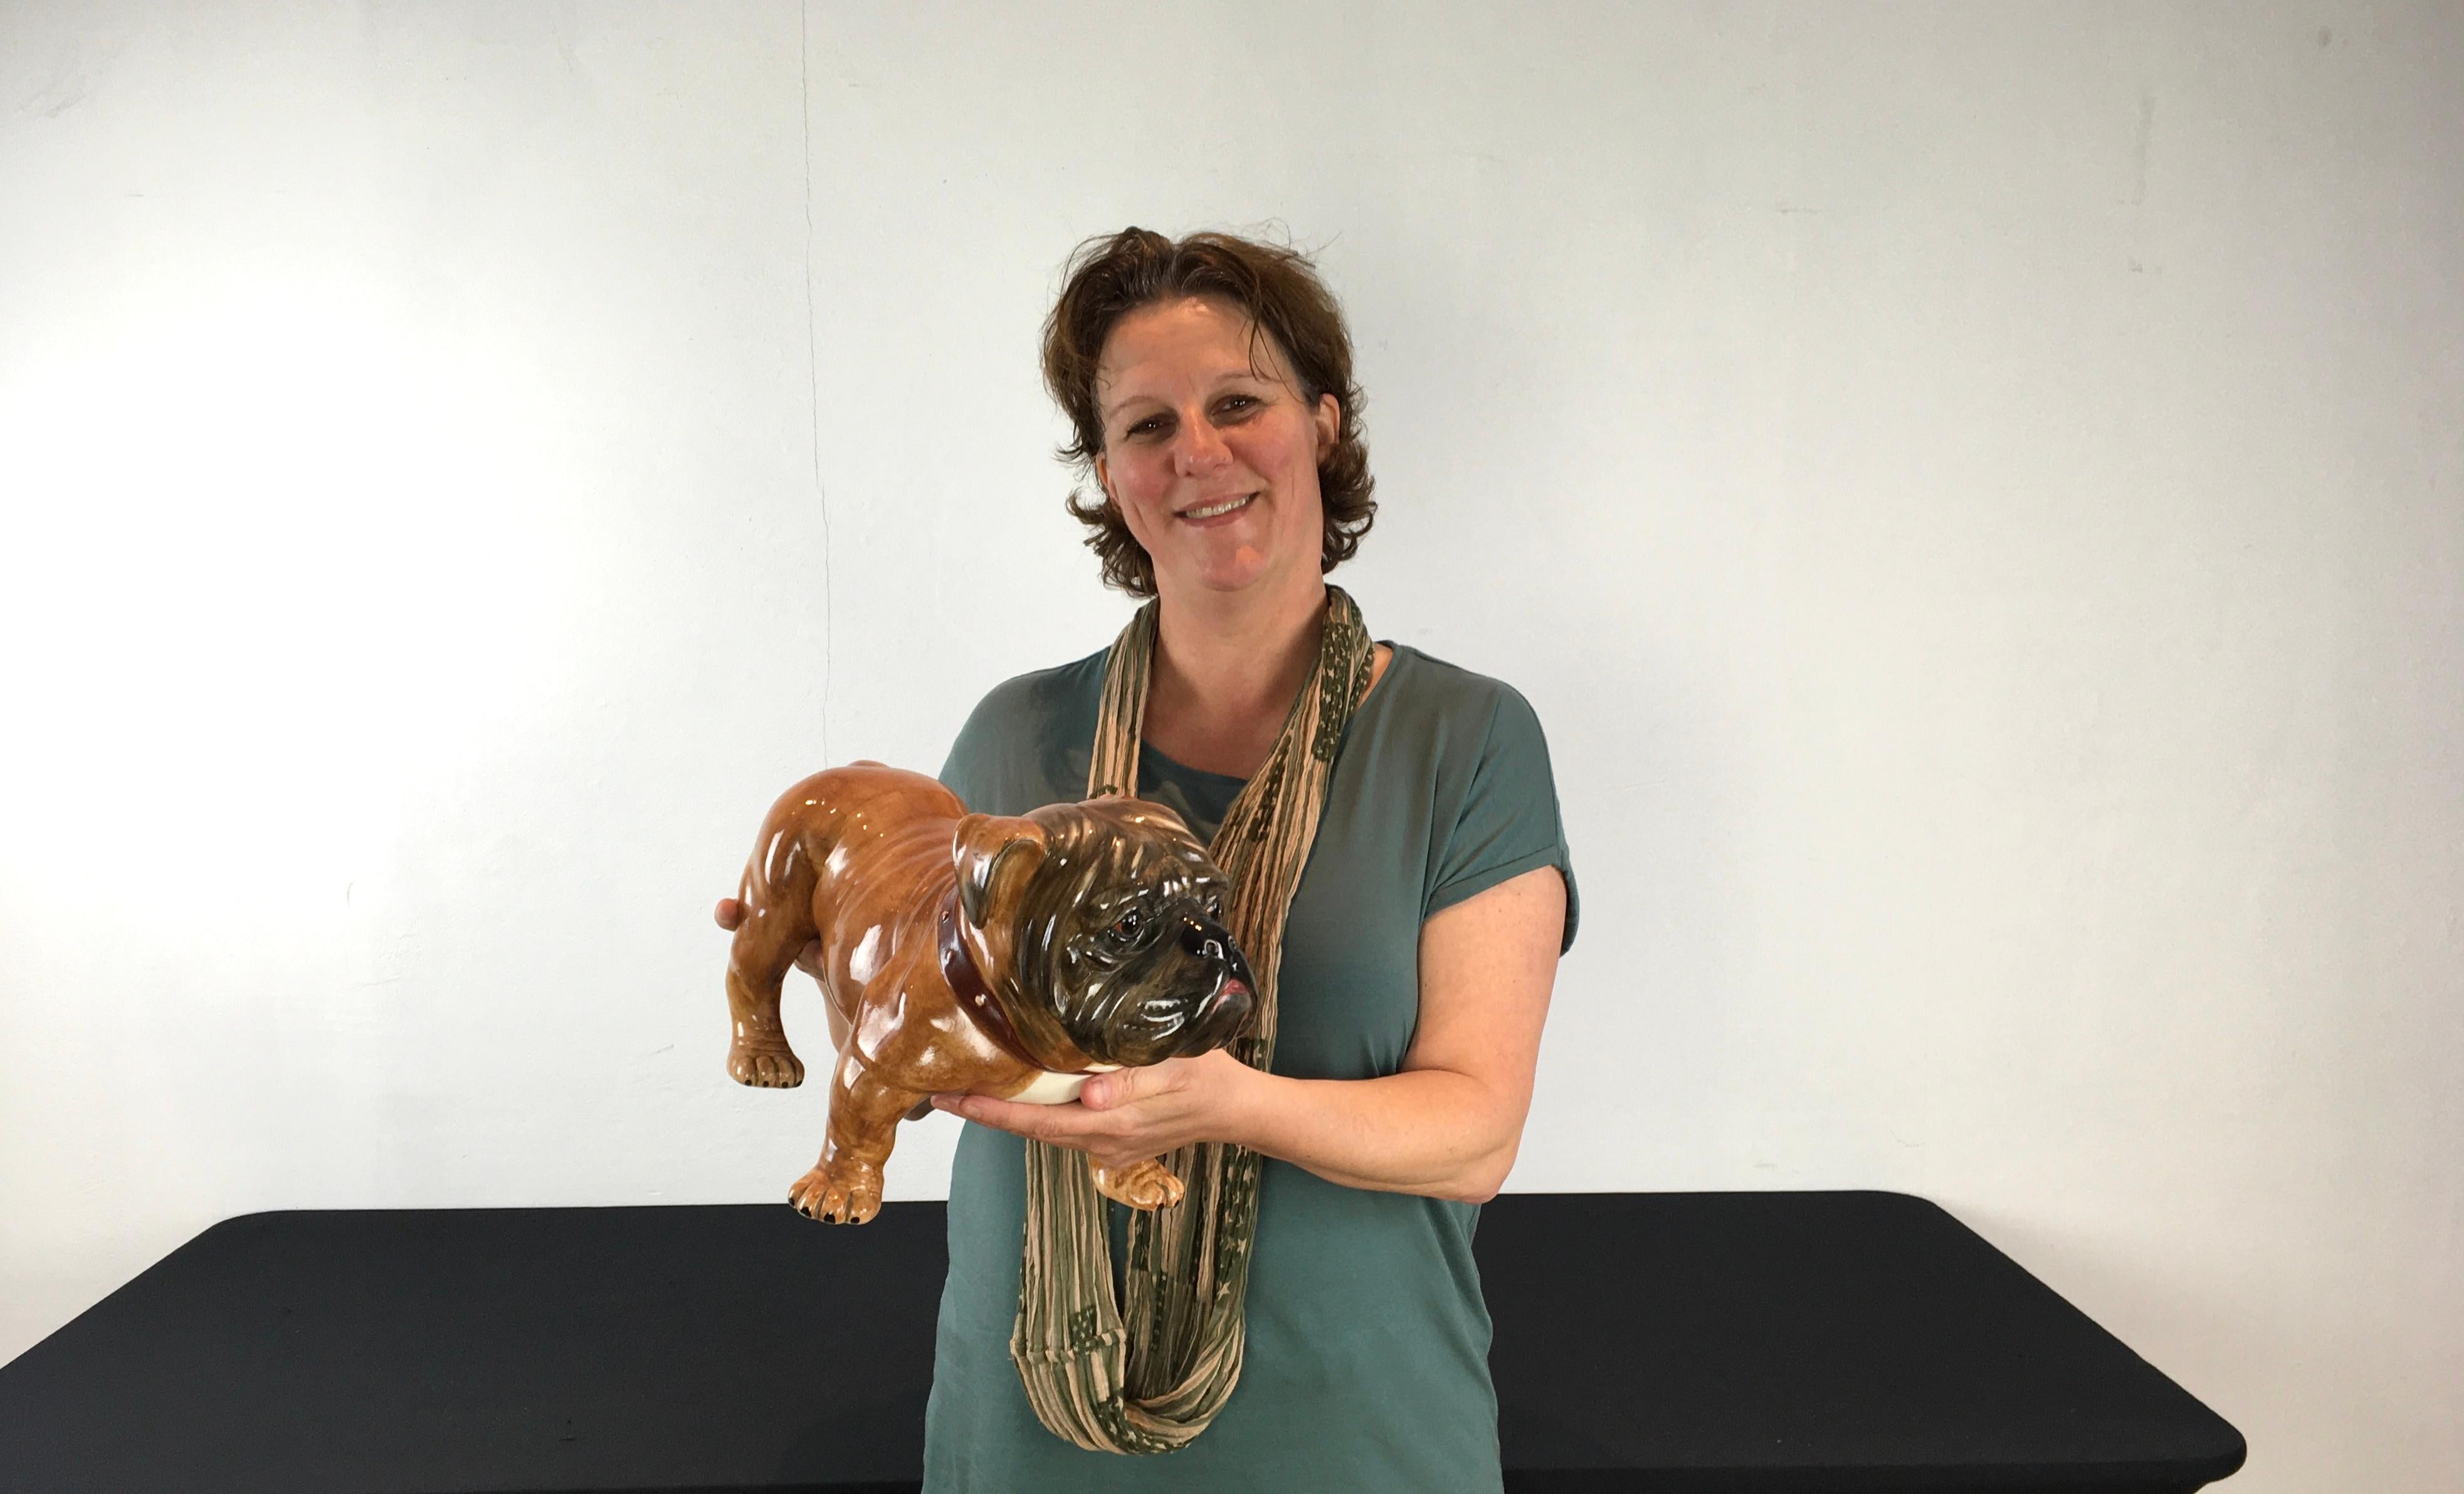 Große Skulptur einer Englischen Bulldogge. 
Eine italienische Bulldoggen-Skulptur aus Keramik aus dem späten 20. 
Handbemalte Figur einer englischen Bulldogge aus brauner Porzellankeramik, signiert und nummeriert A/7350 C S. Italien. 
Diese in